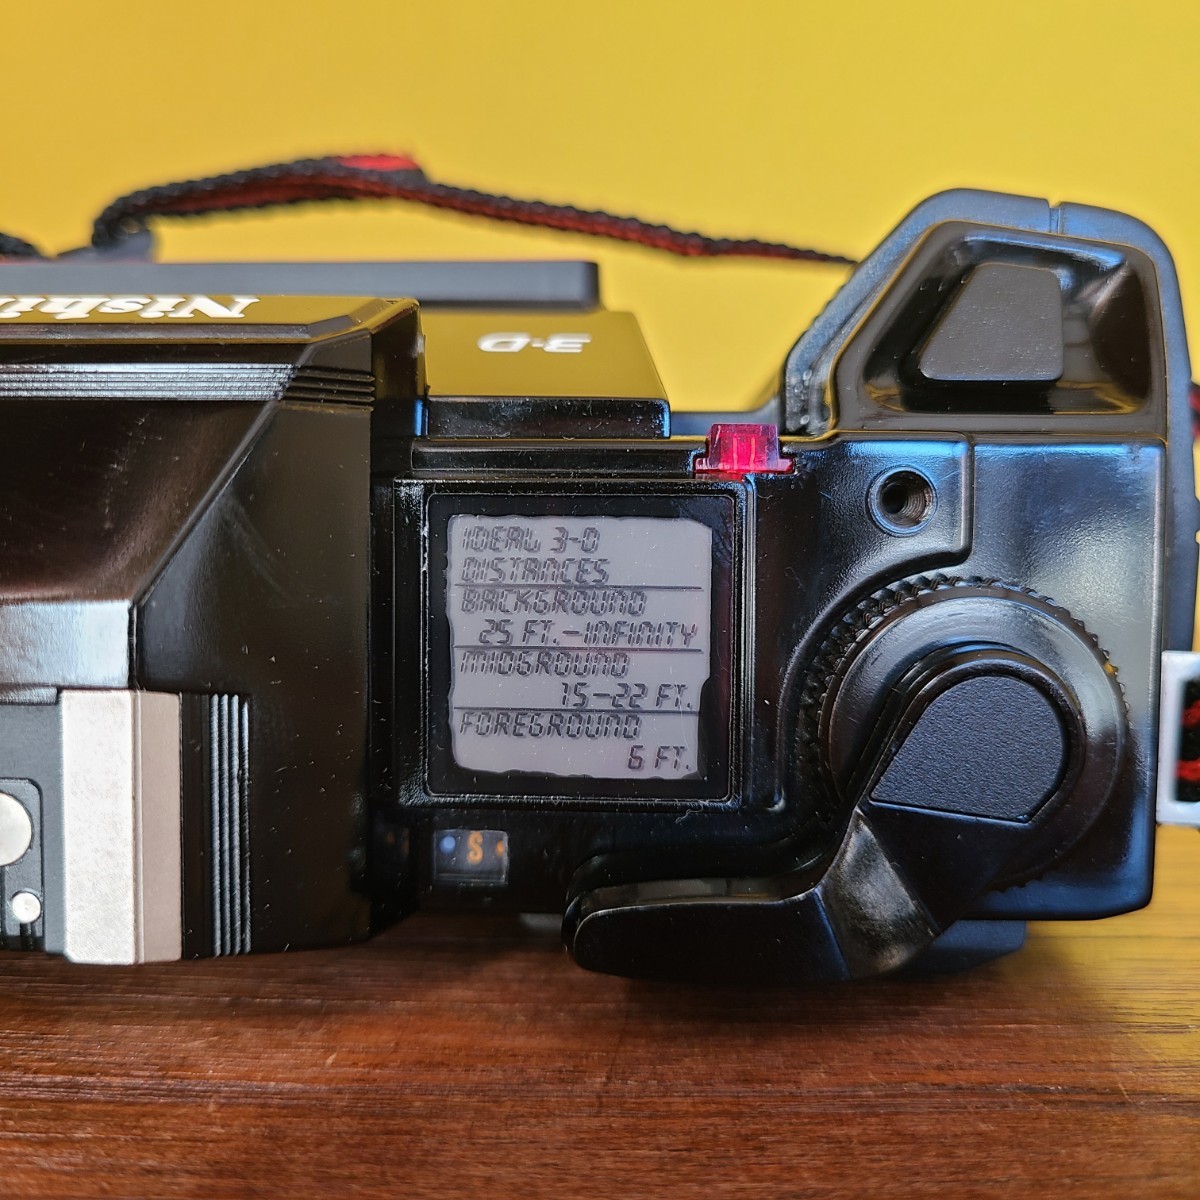 9☆100円～ ニシカ Nishika 3-D N8000 30mm Quadra Lens System コンパクトカメラ ヴィンテージ フィルムカメラ_画像7